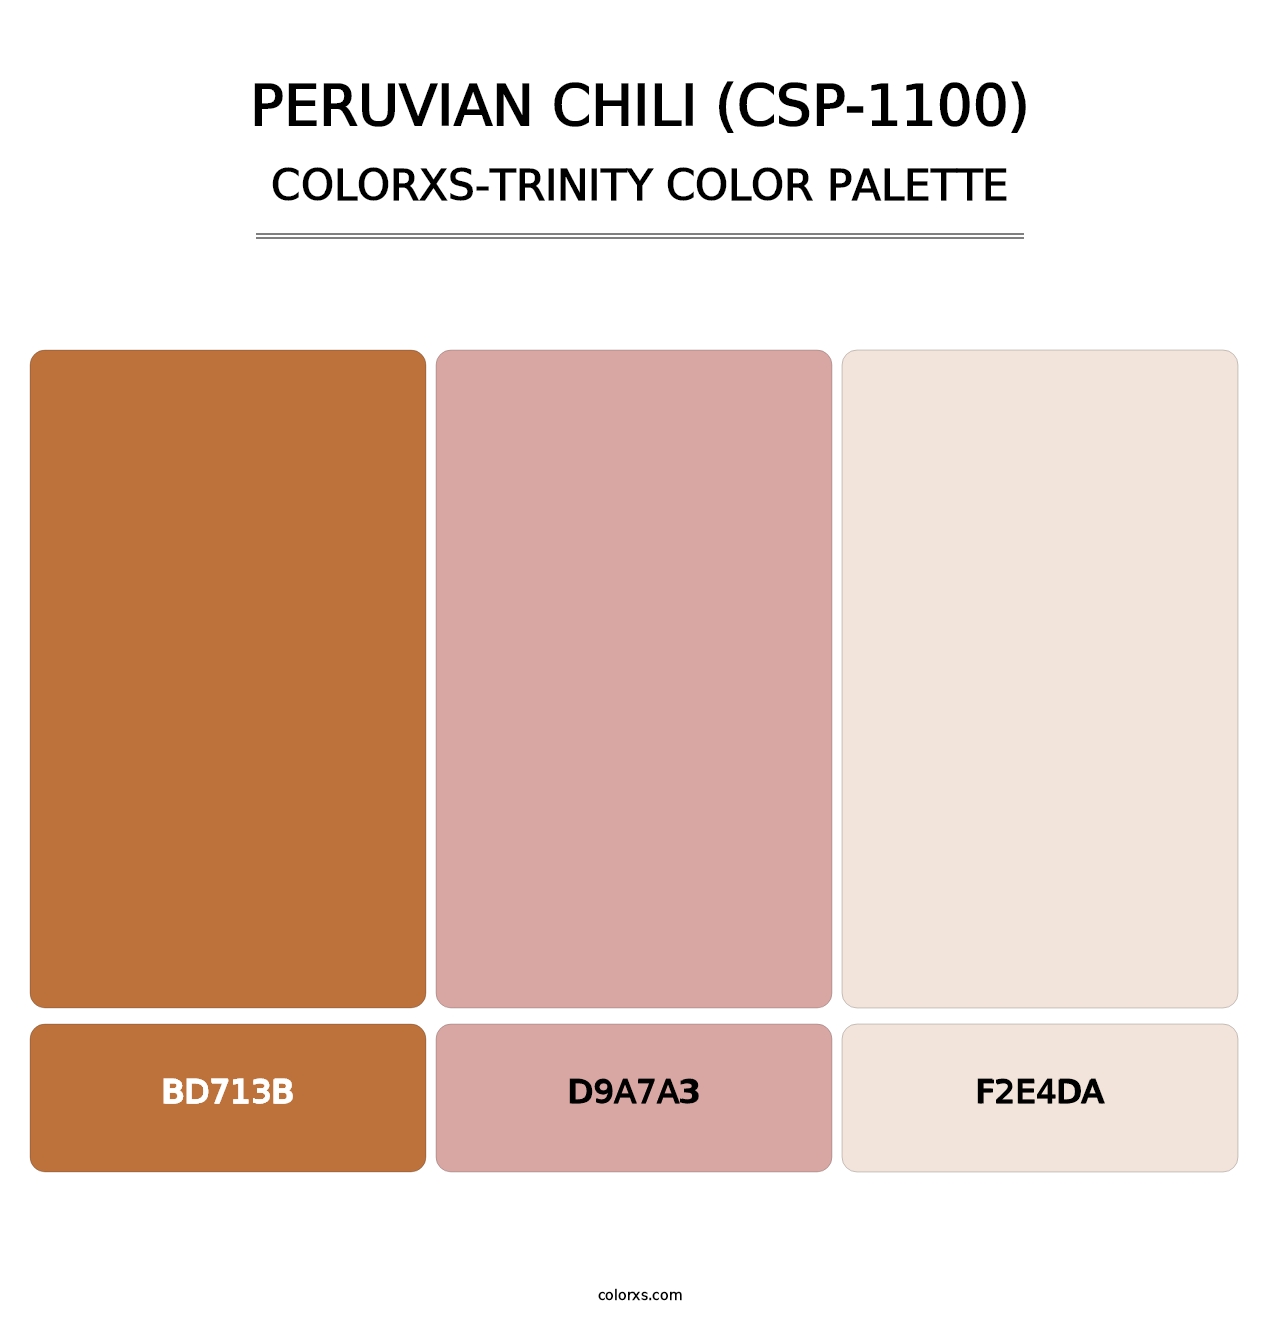 Peruvian Chili (CSP-1100) - Colorxs Trinity Palette